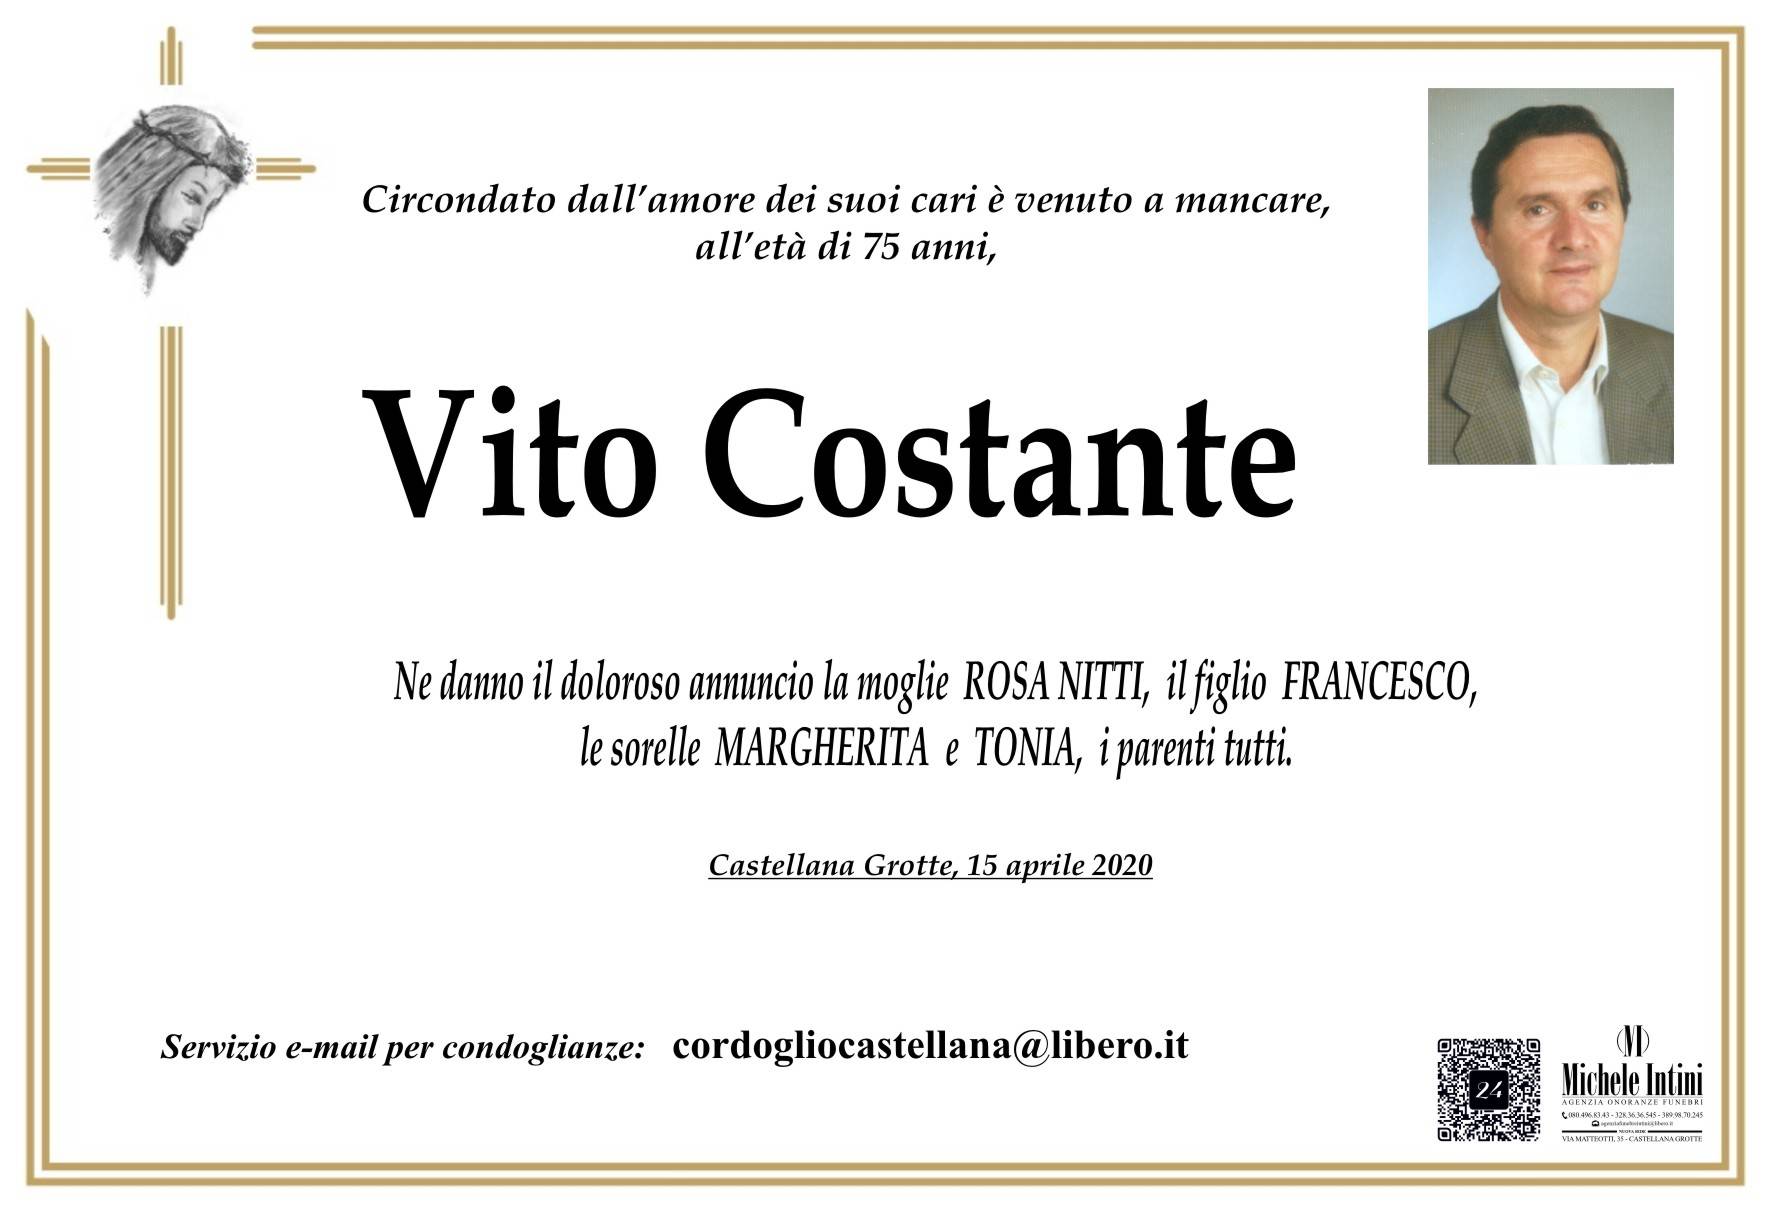 Vito Costante